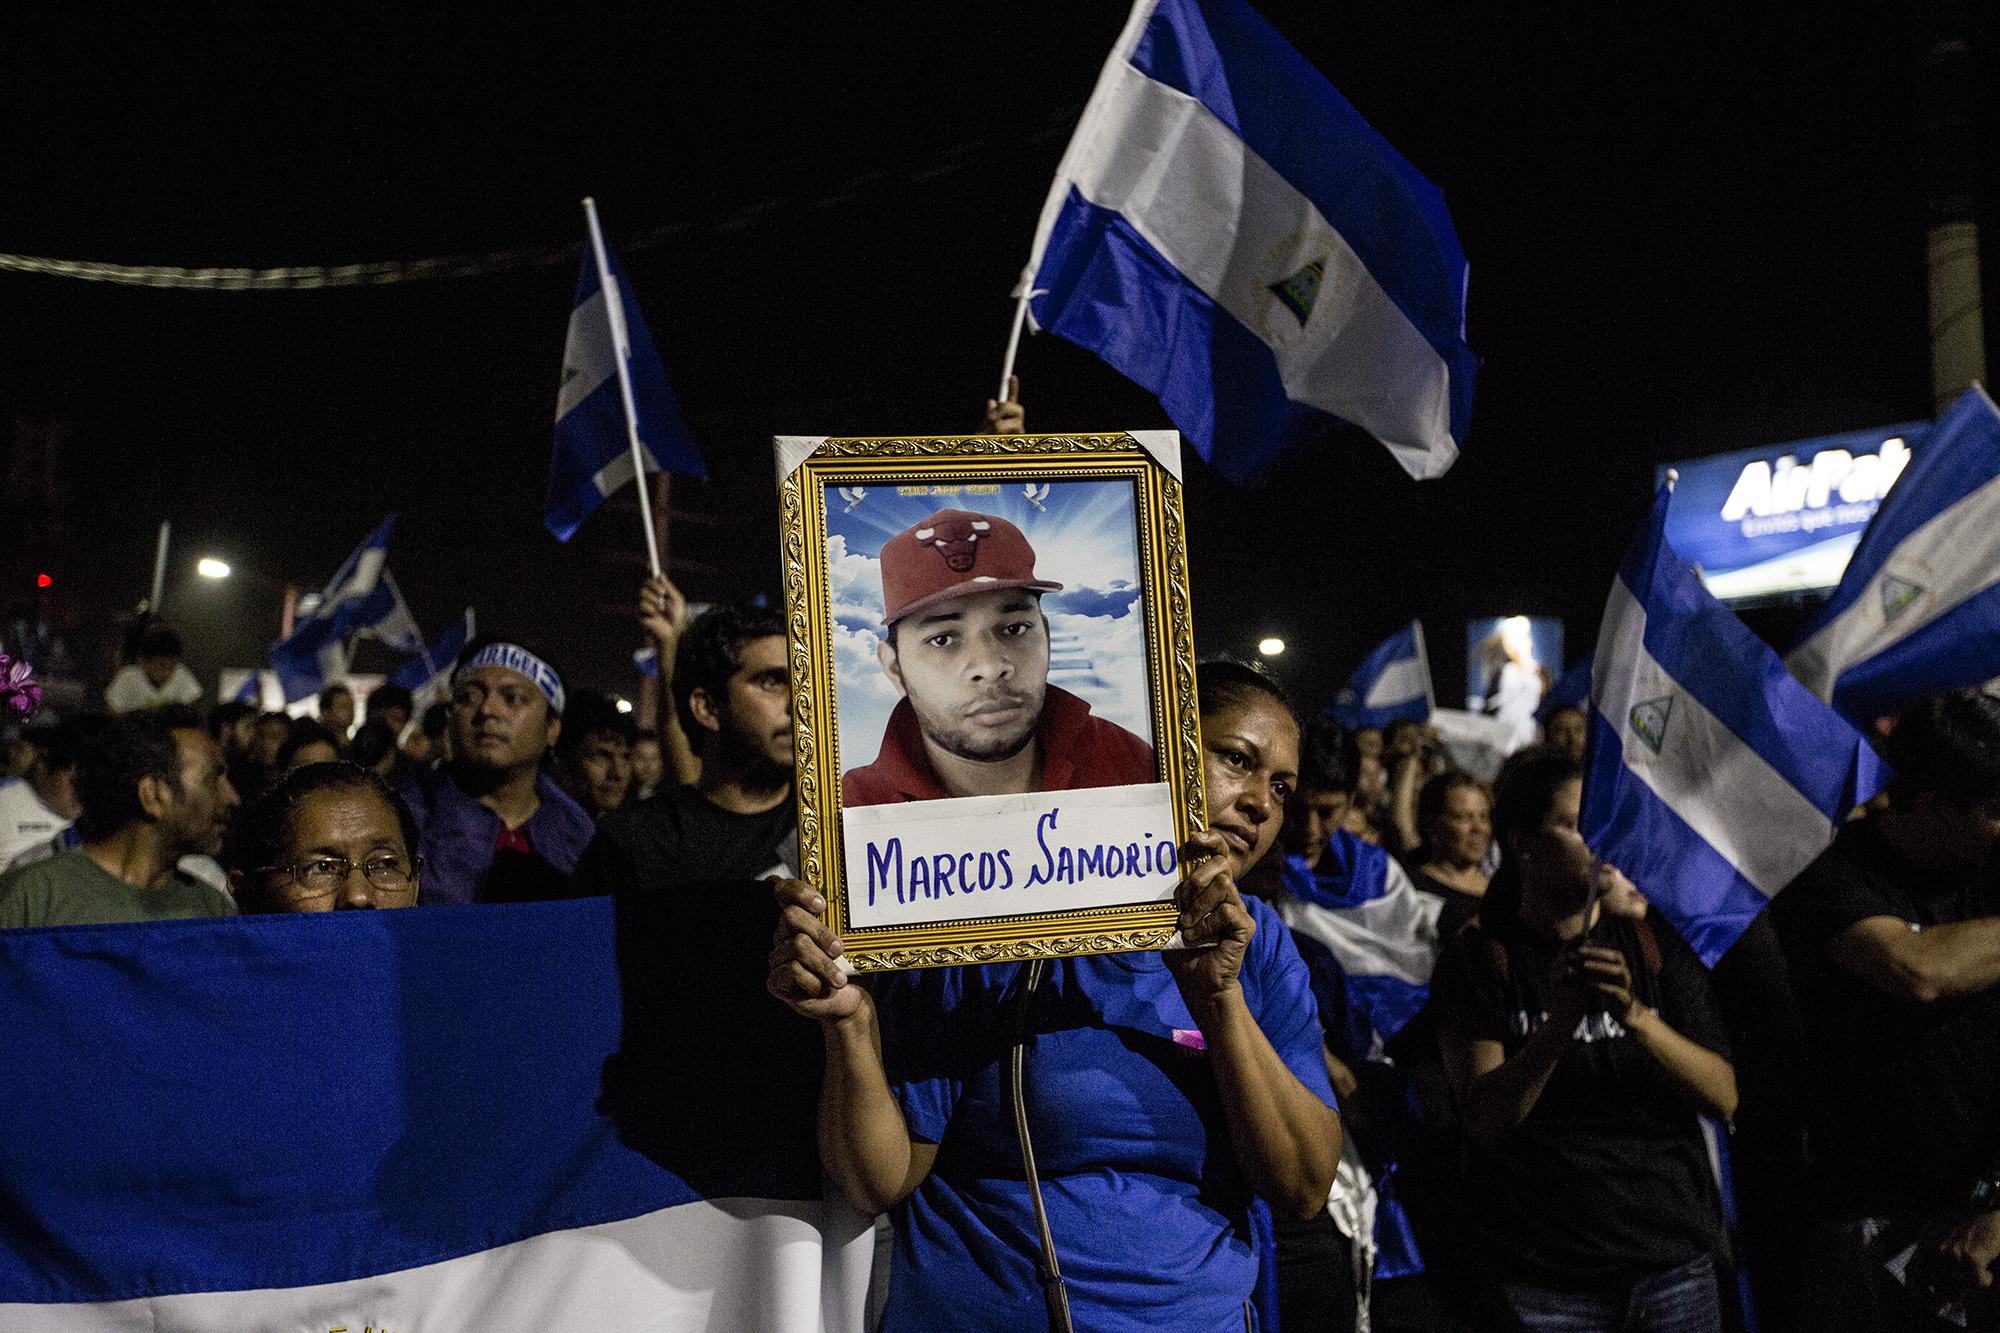 La tía de Marcos Samorio levanta un retrato de su sobrino, asesinado el 20 de abril por grupos de choque a favor del régimen de Daniel Ortega. Foto: Fred Ramos